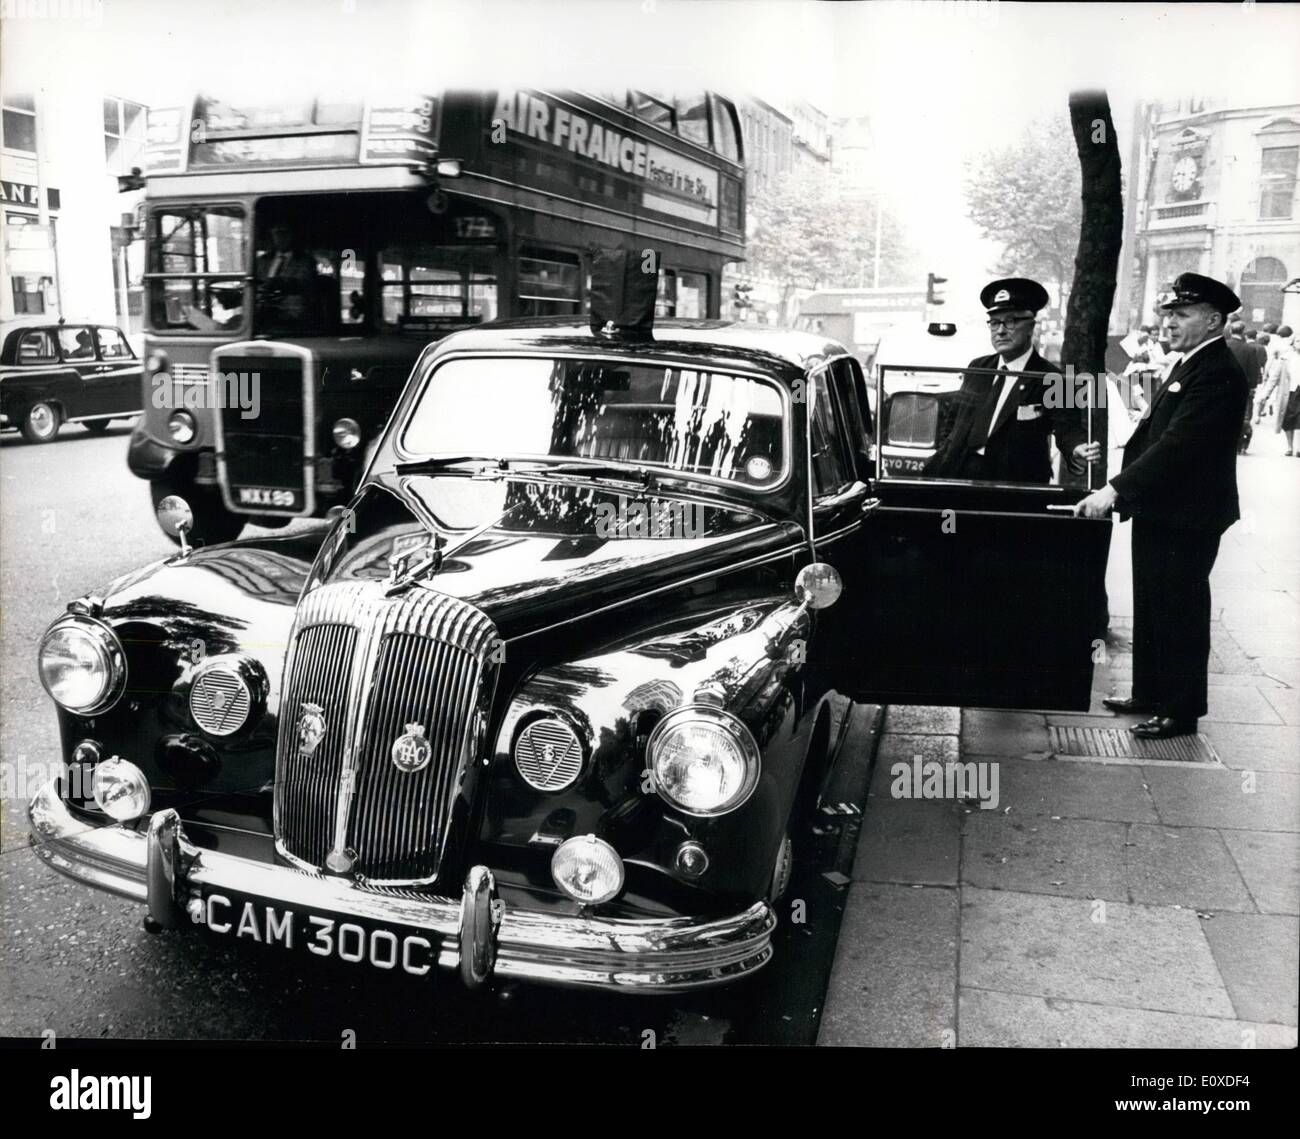 6. Juni 1966 - der Bürgermeister als Bus-Inspektor bei die letzte von der non-Stop-Konvoi von morgen Rushhour Busse kontrolliert worden ist, hochzieht eine glänzende Daimler. Schirmmütze ist auf Schirmmütze angehoben, wie der Chauffeur sein Passagier begrüßt. Seine Verehrung der Bürgermeister von Camden, sonst London Transport Inspektor von Bussen, Stadtrat Mike Patric O'Connor. Die Szene ist, dass Kingsway, London, Counsillor O'Connor hat nur nach der Frühschicht getaktet, ab. Seiner bürgermeisterlichen Limousine bringt ihn in seine Heimat für einen schnellen Pinsel bevor der Tag der Bürgerpflichten beginnt Stockfoto